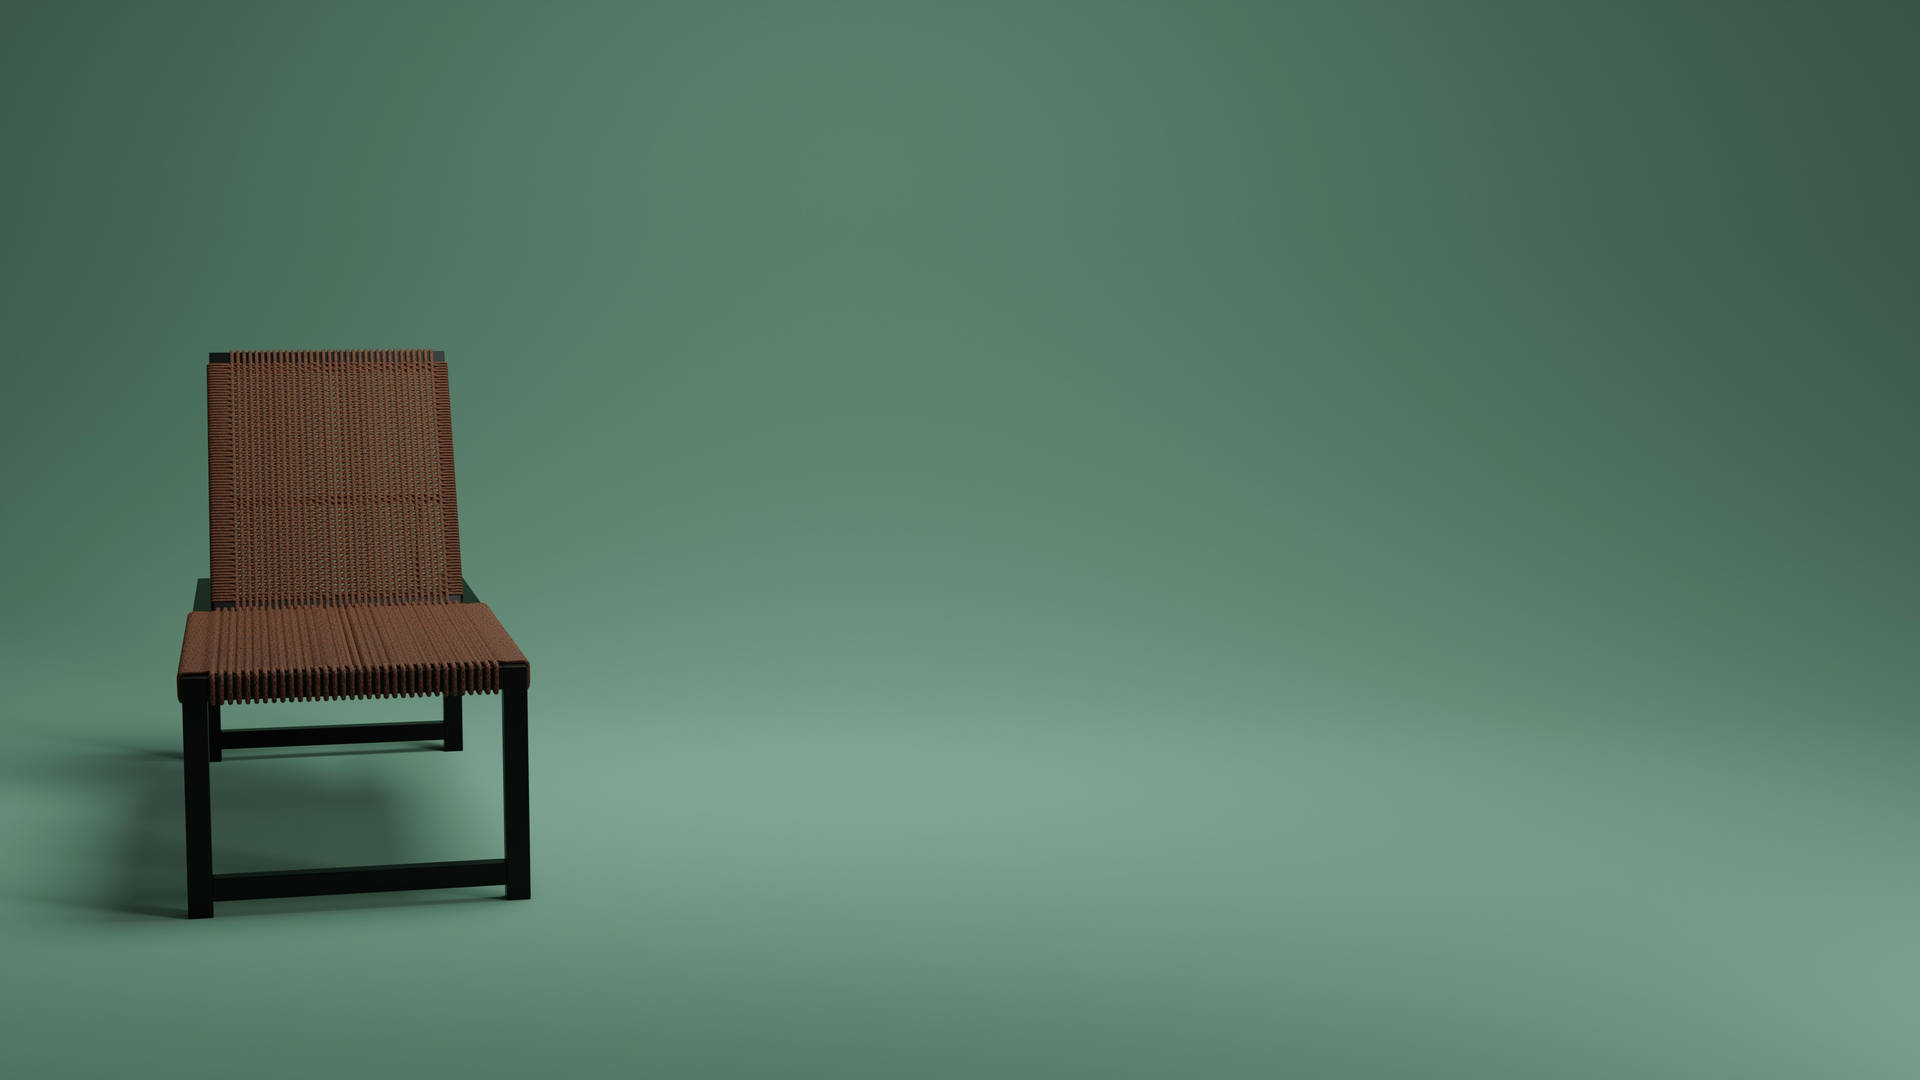 Chair On Green Minimalist Wall Wallpaper